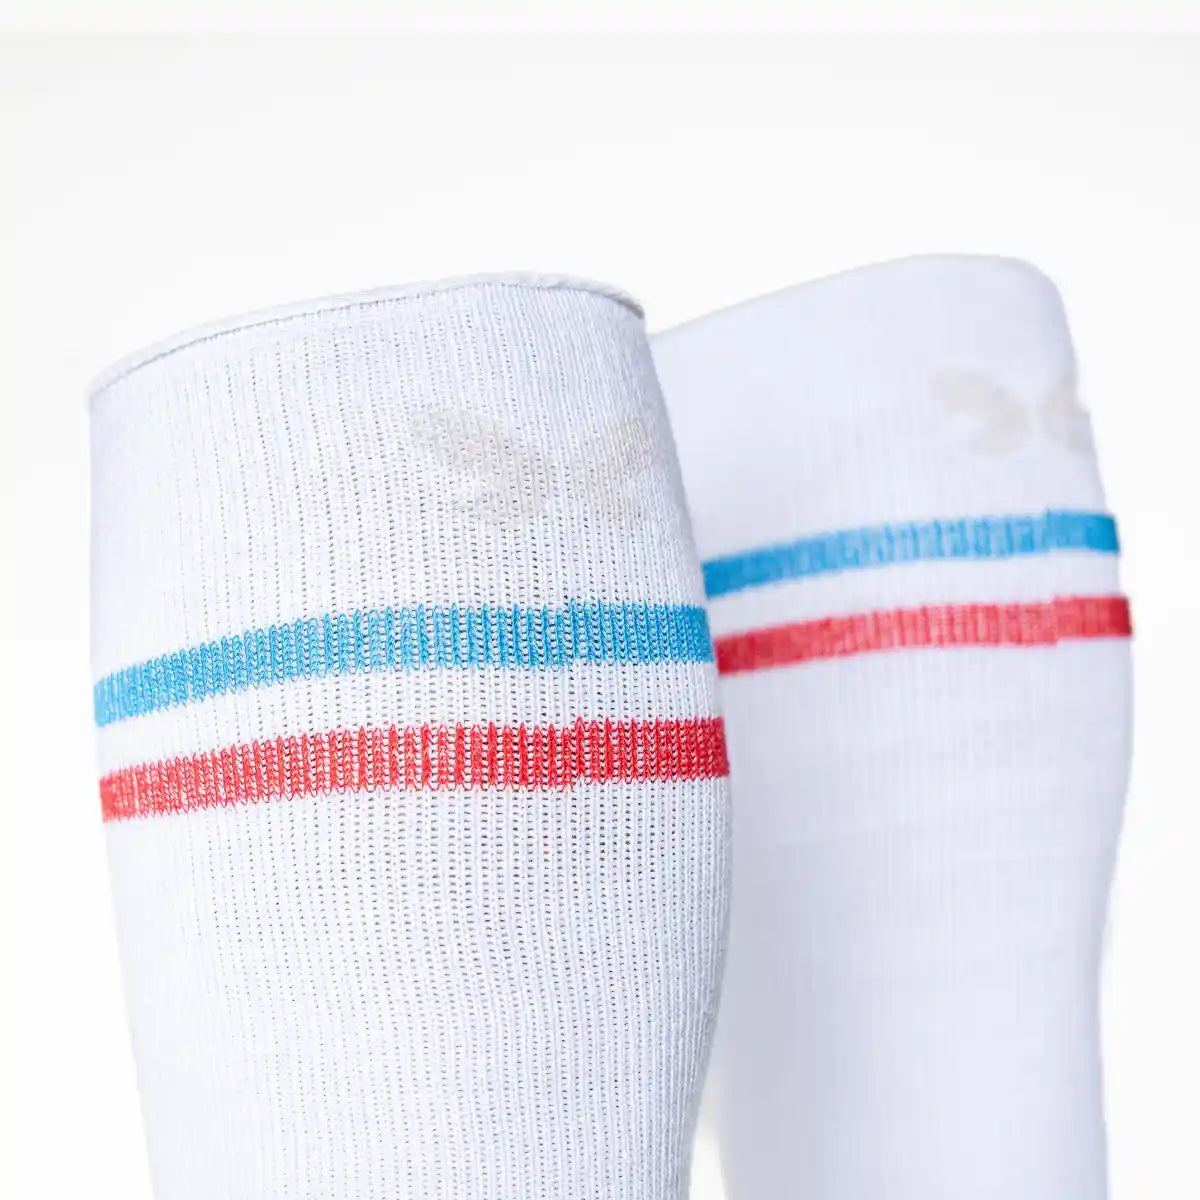 Calcetín compresivo de algodón alto, estilo vintage retro. Color blanco con 2 rayas azul y roja